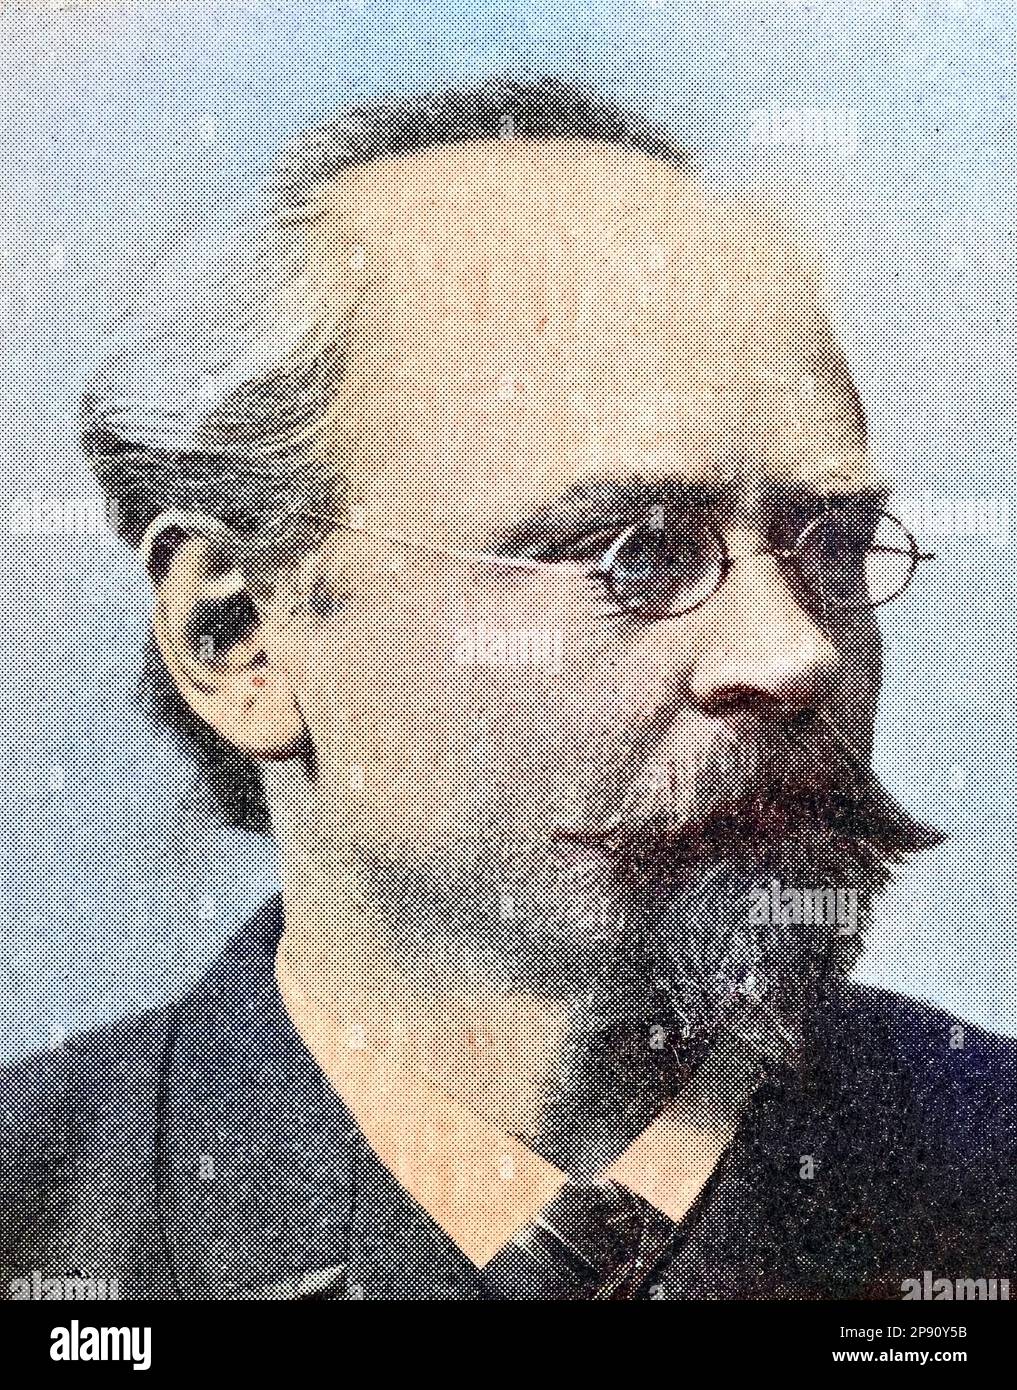 Wendelin Förster, 10. Februar 1844 - 18. Mai 1915, war ein deutscher Philologe und Romanist, Historisch, digital restaurierte Reproduktion von einer Vorlage aus dem 19. Jahrhundert Stock Photo